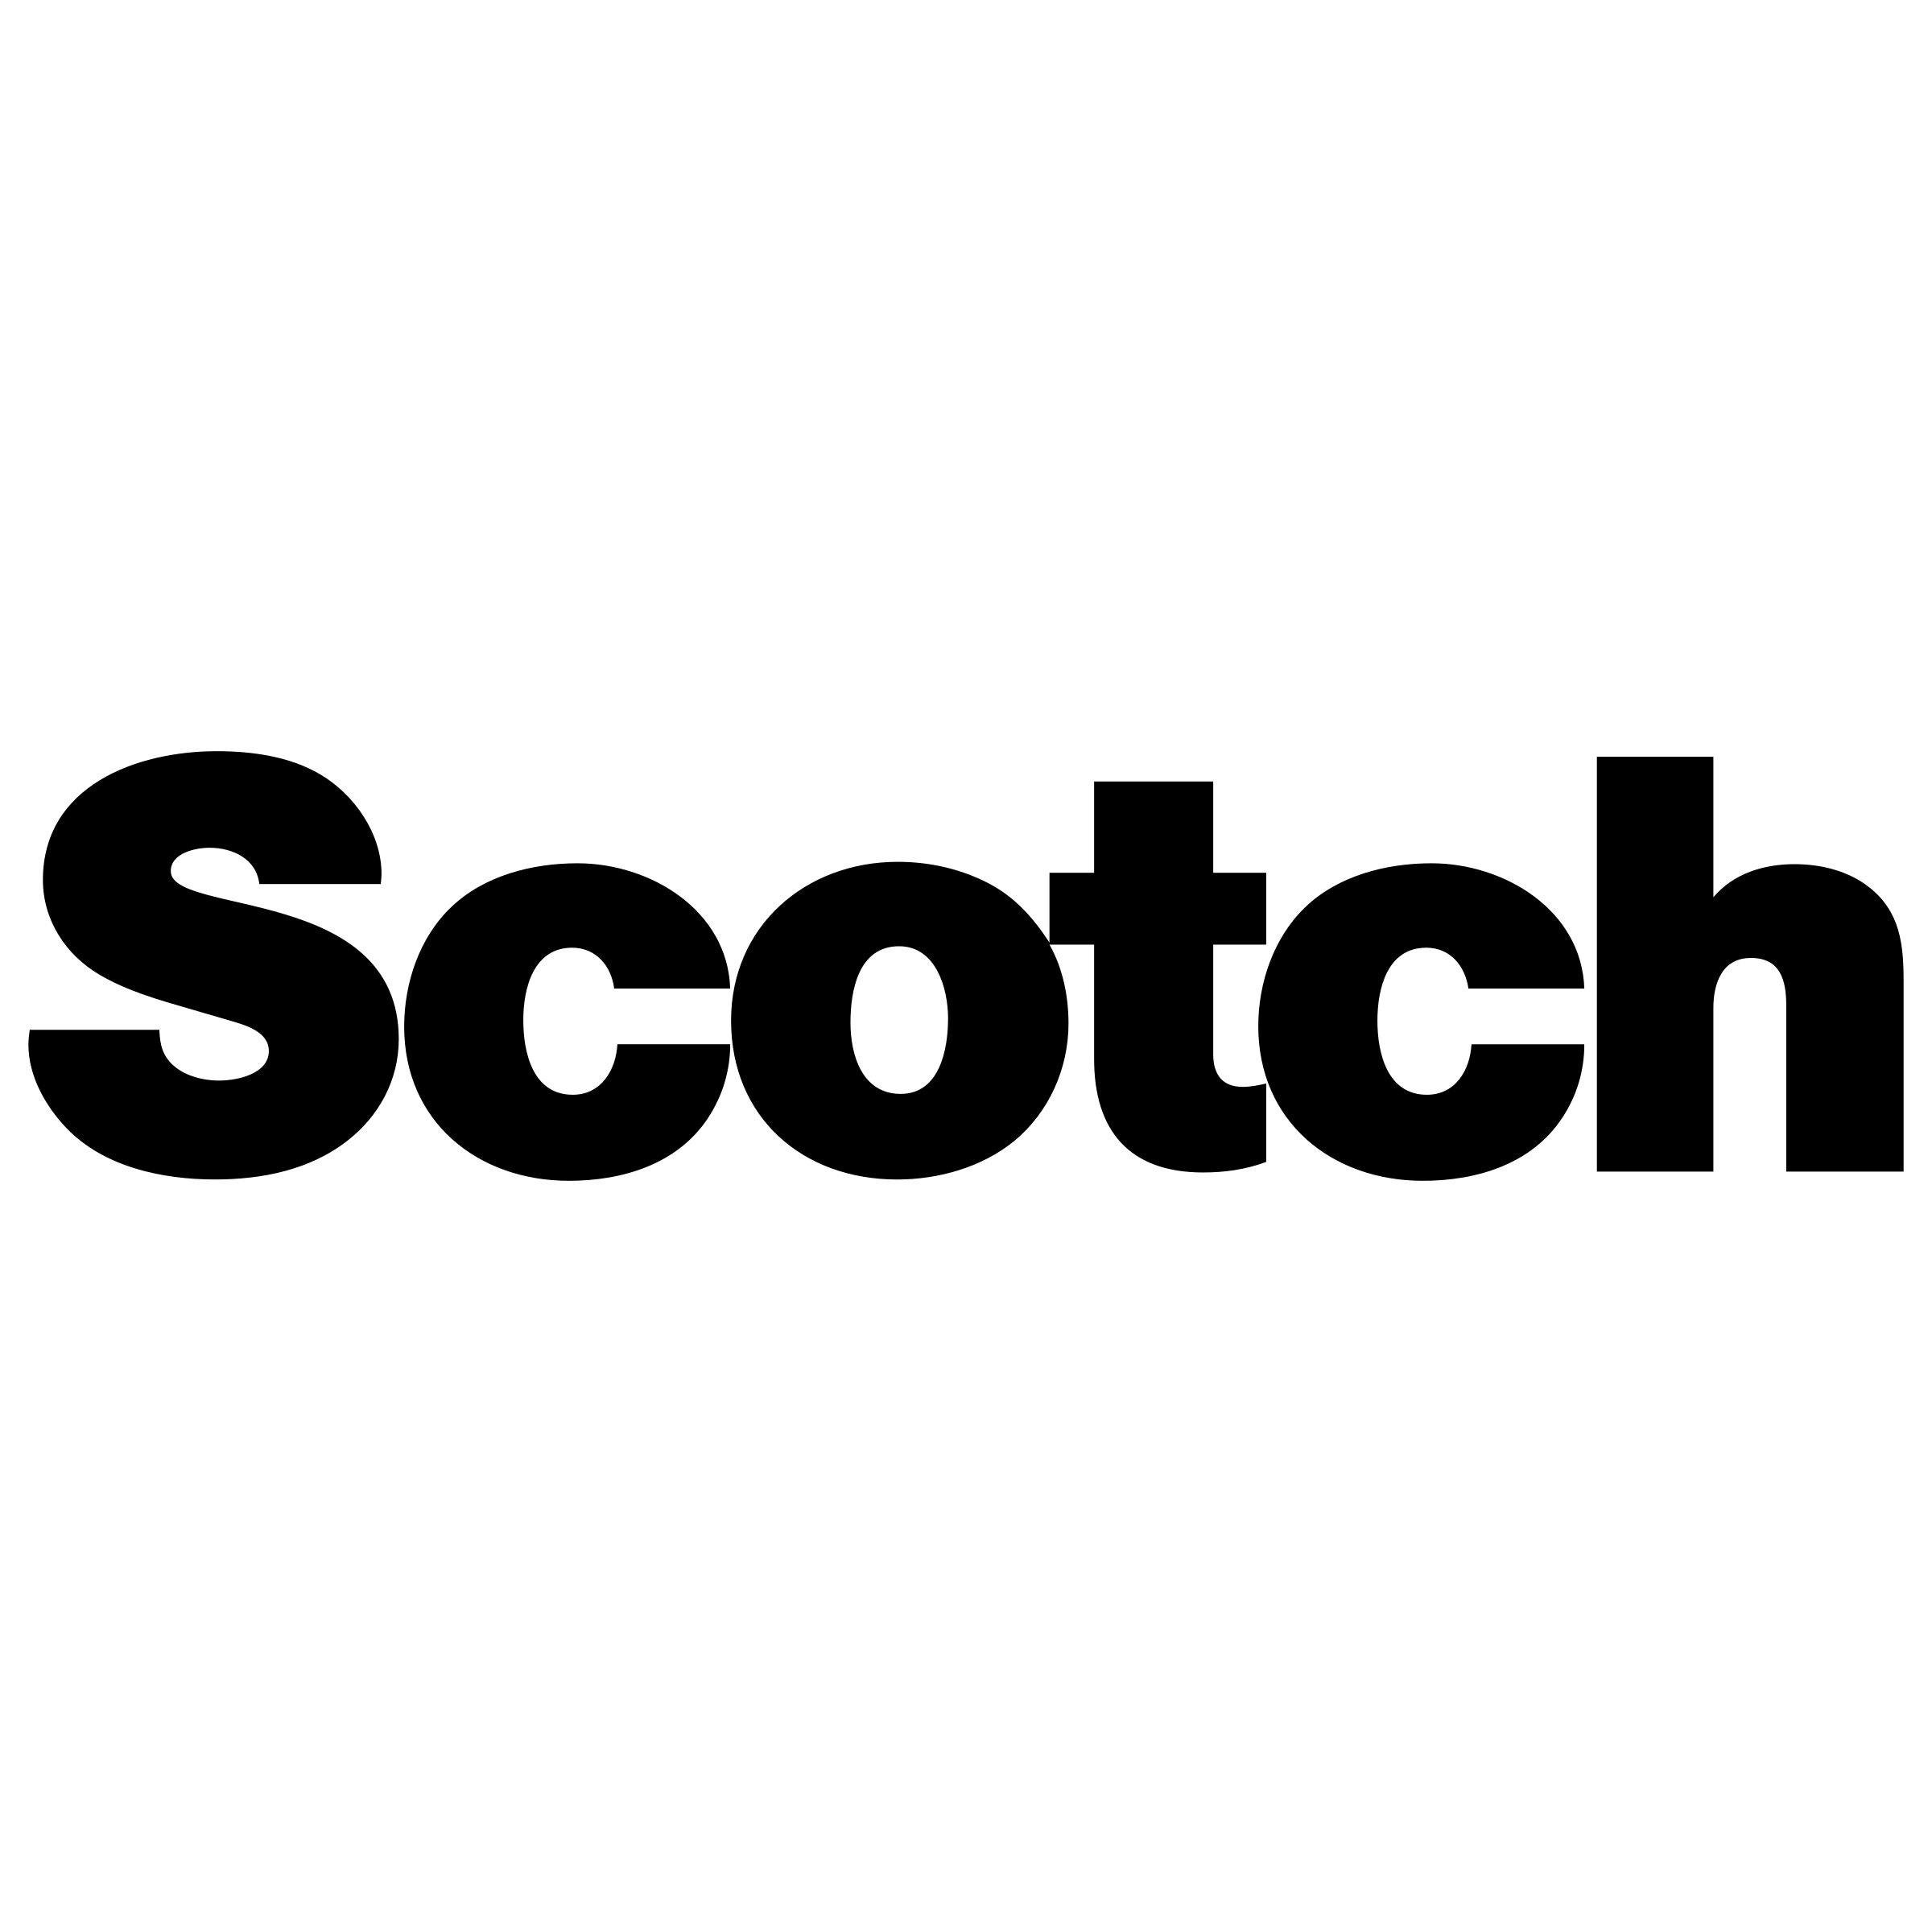 Scotch Logo - Scotch Logo PNG Transparent & SVG Vector - Freebie Supply